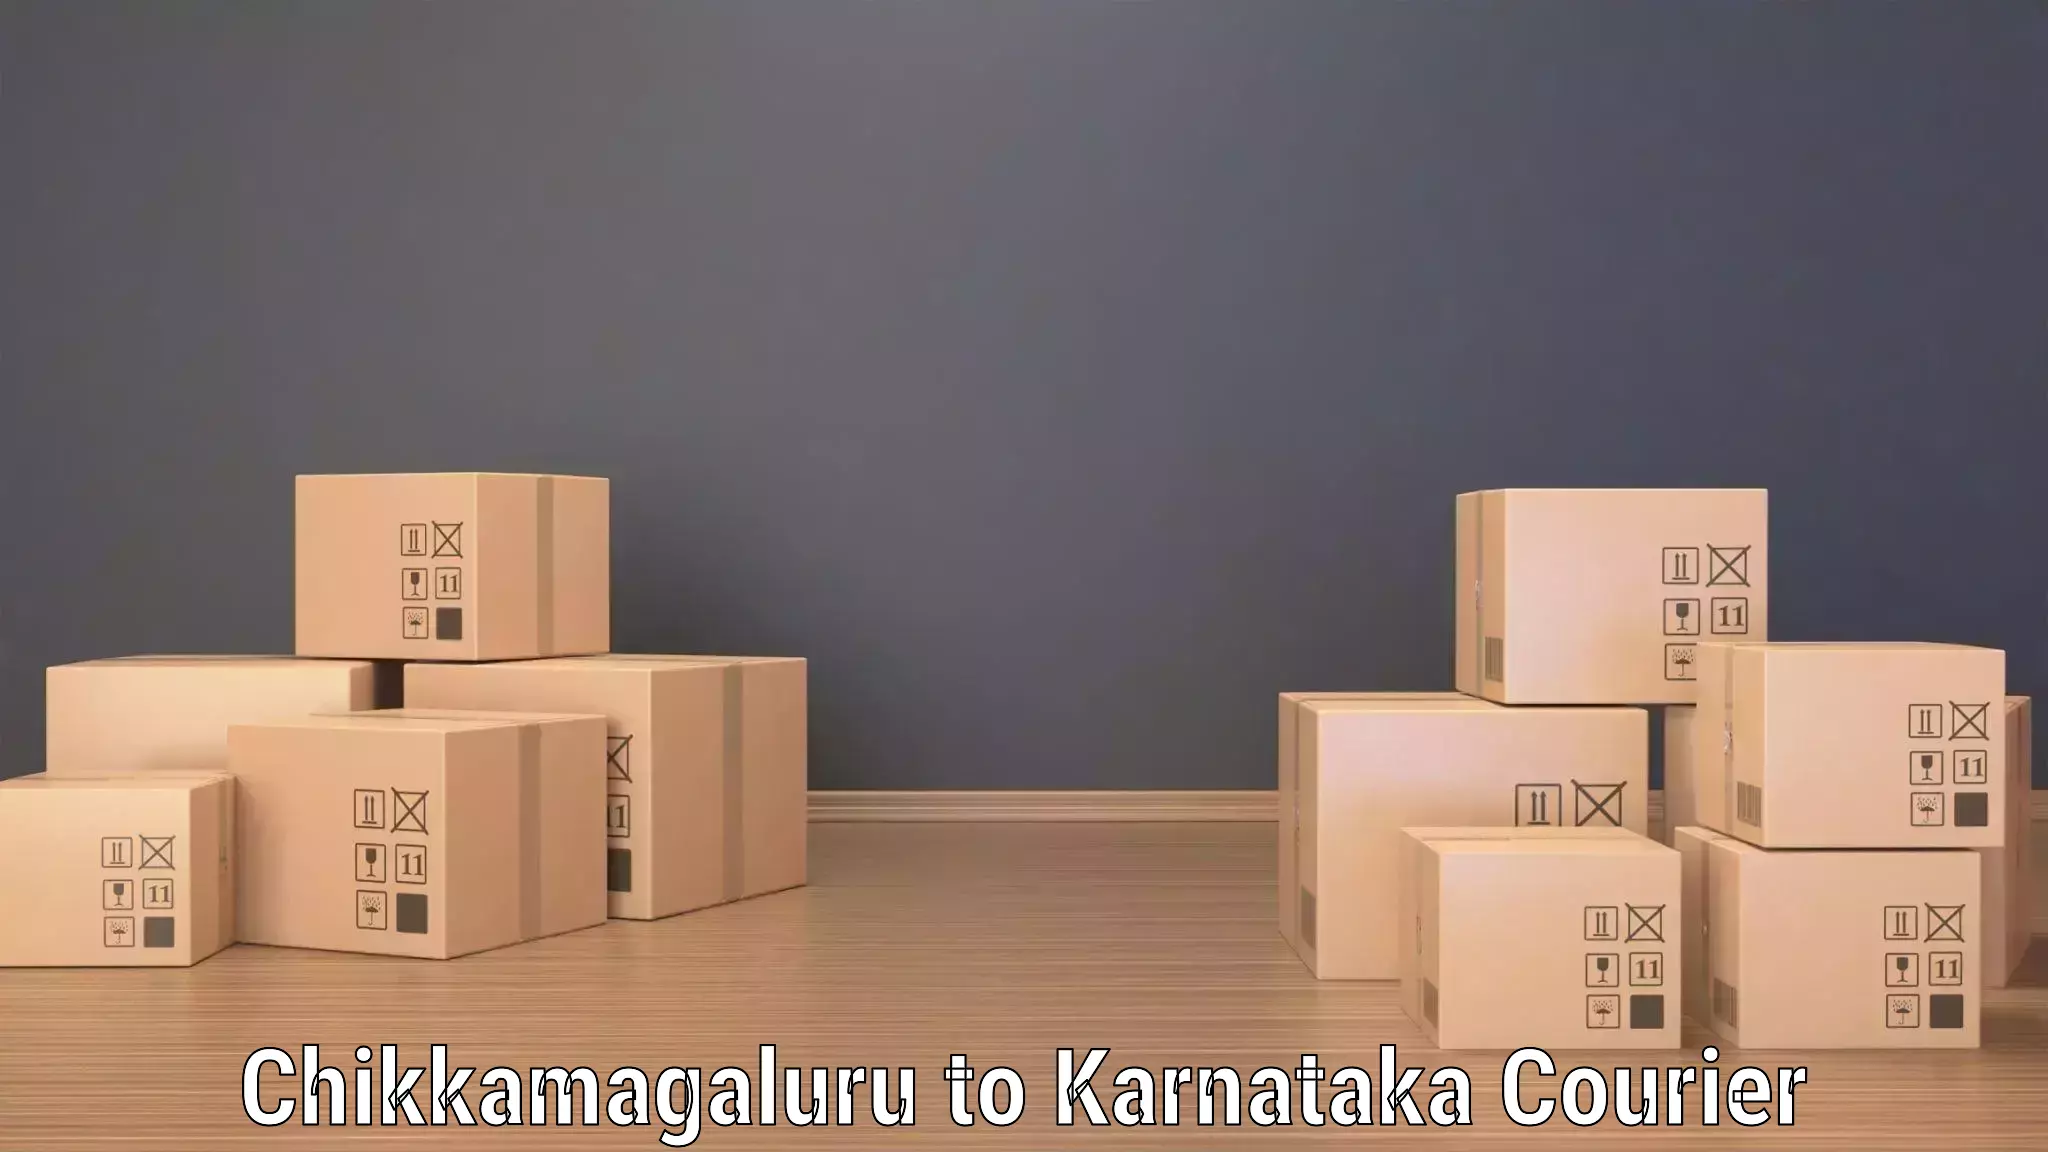 Express mail service Chikkamagaluru to Karnataka